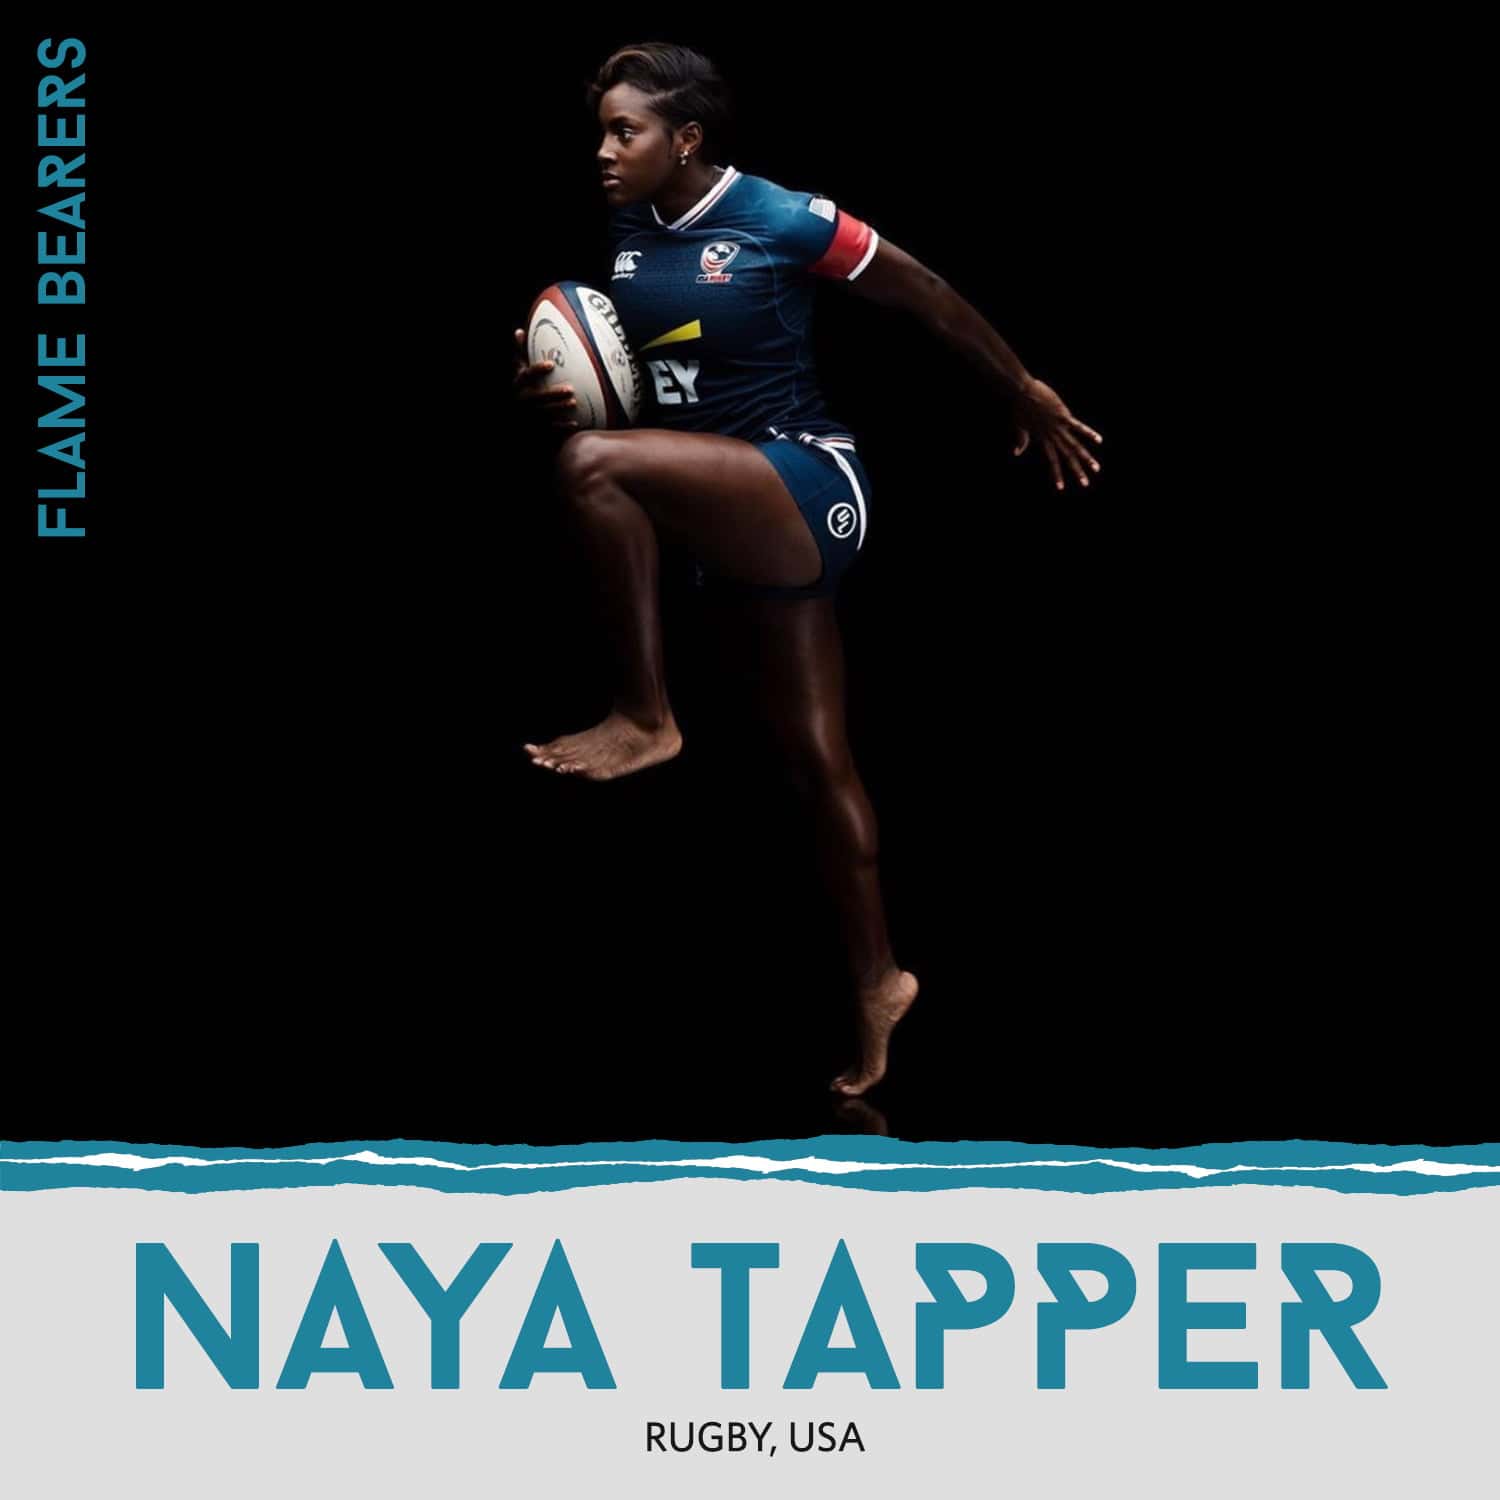 Naya Tapper (USA